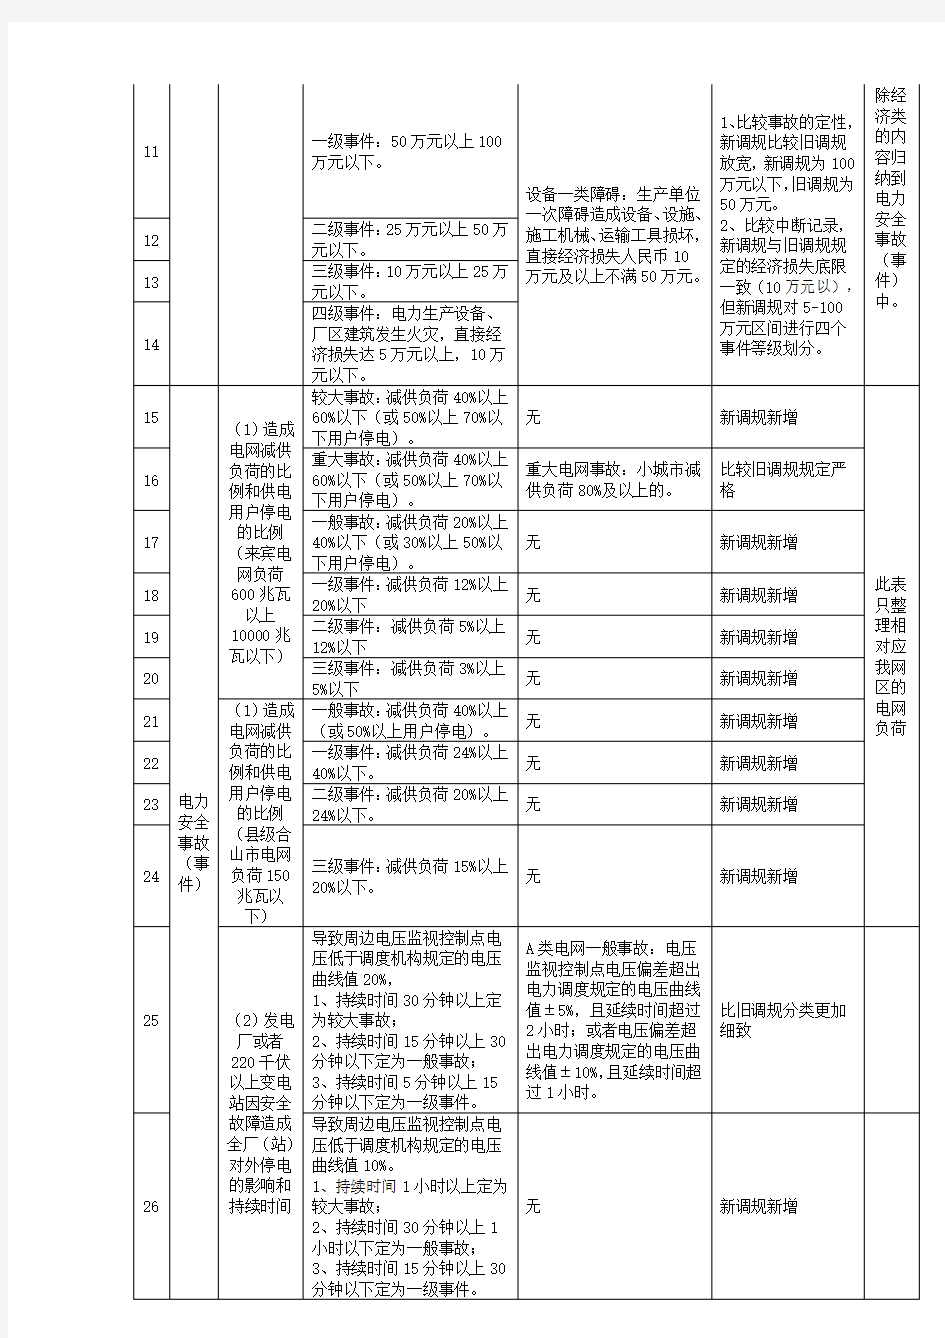 《中国南方电网有限责任公司电力事故(事件)调查规程(试行)》等级划分差异表